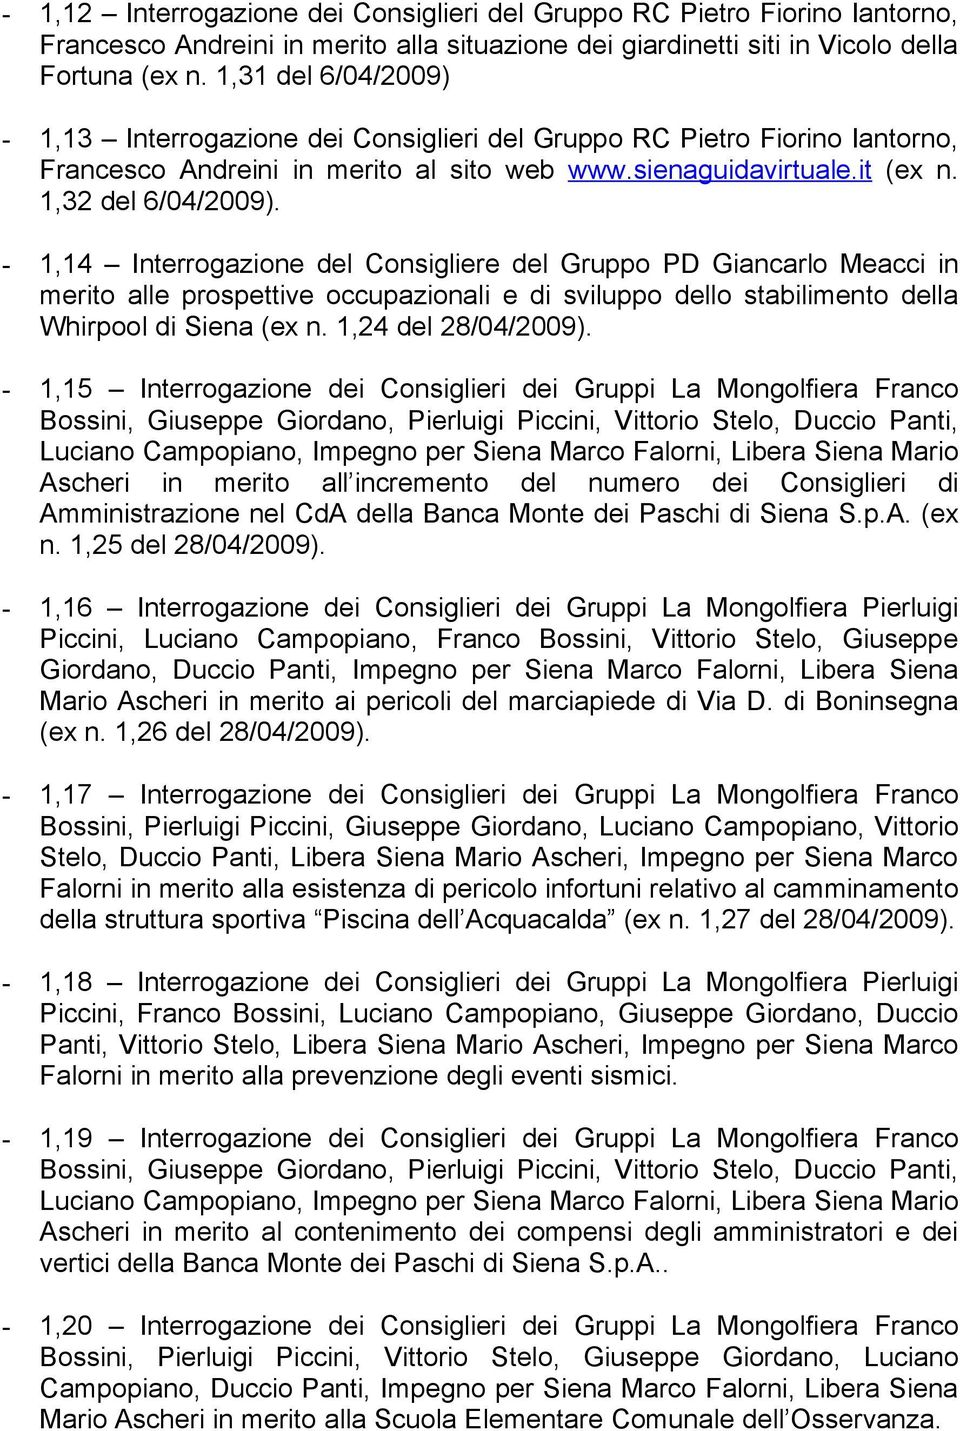 - 1,14 Interrogazione del Consigliere del Gruppo PD Giancarlo Meacci in merito alle prospettive occupazionali e di sviluppo dello stabilimento della Whirpool di Siena (ex n. 1,24 del 28/04/2009).